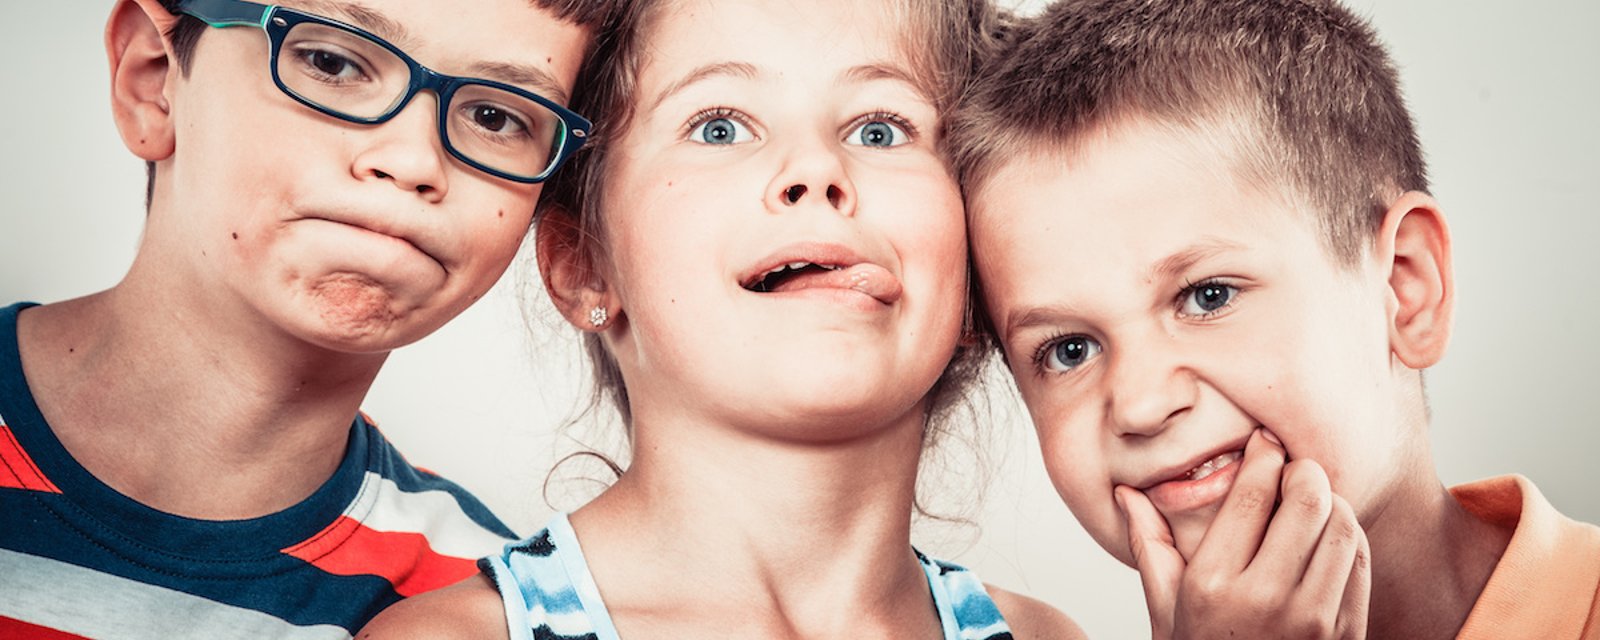 Voici la signification de 8 comportements étranges que peuvent avoir vos enfants